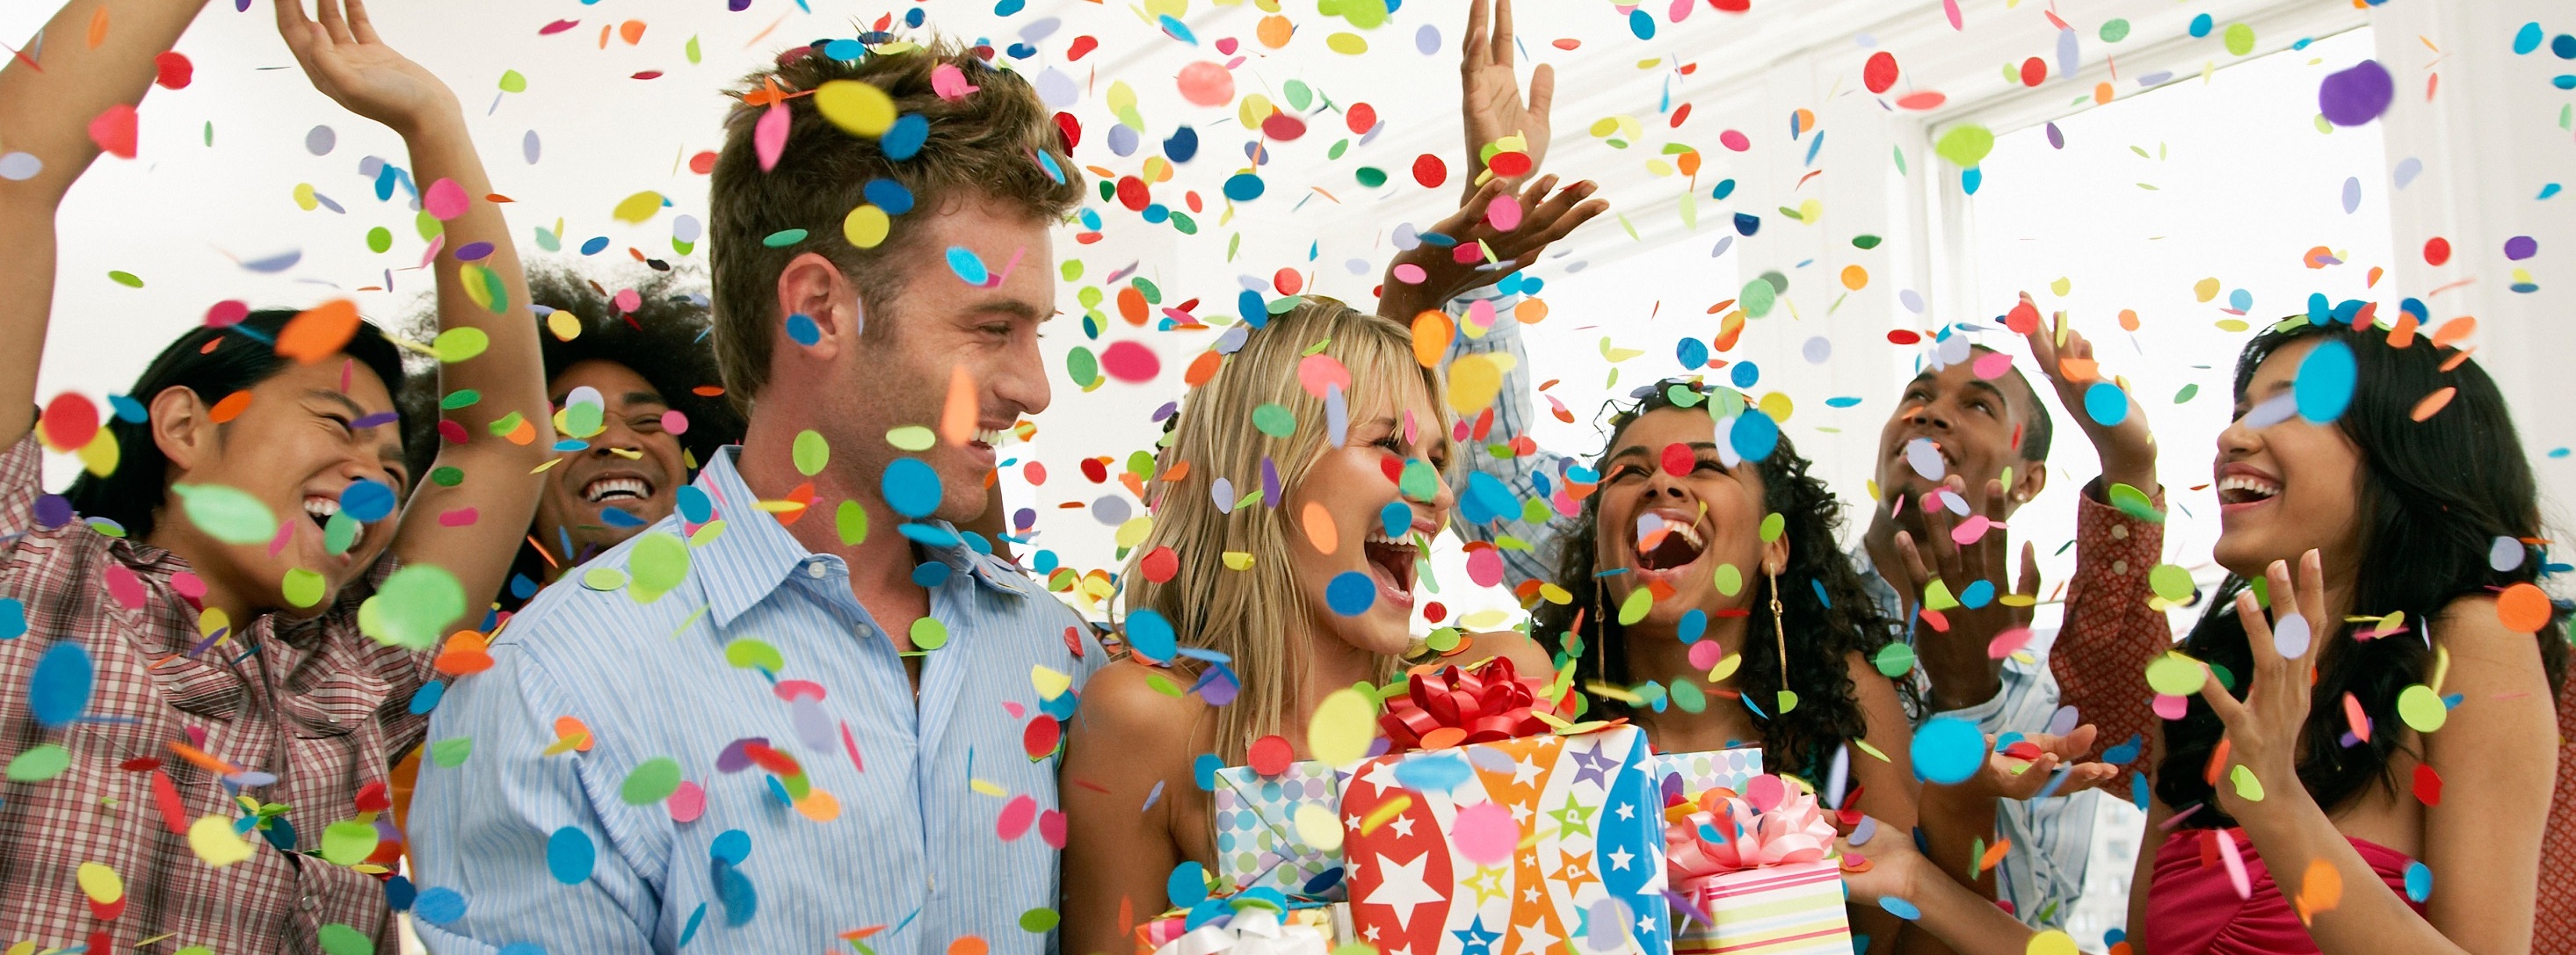 Организация фестиваля. День рождения вечеринка. Счастливые люди на празднике. День веселья и радости. Коллективный праздник.